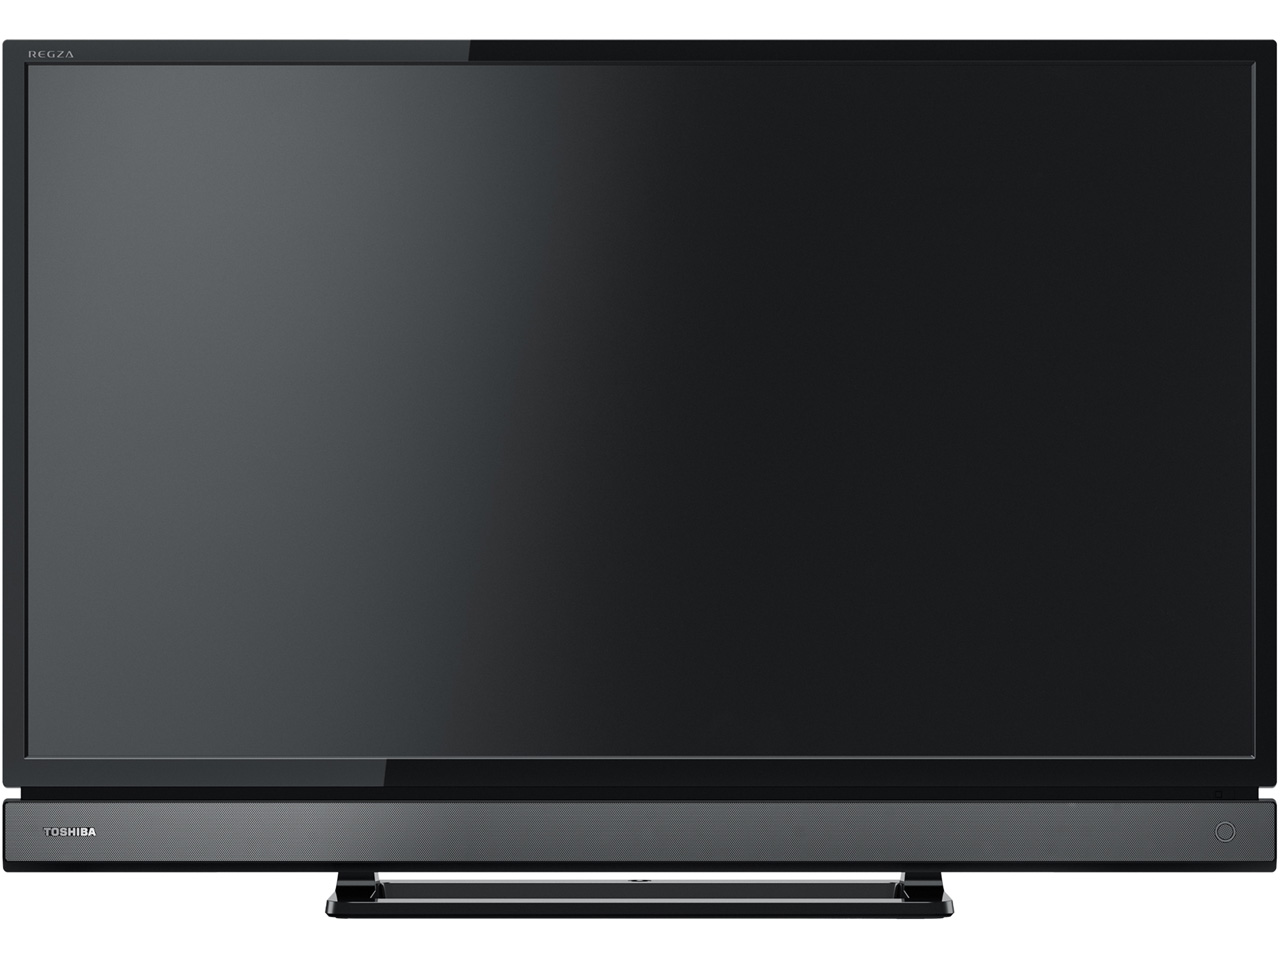 壁掛け金具対応検索 東芝 32インチ液晶テレビサイズ一覧 テレビアクセサリー市場